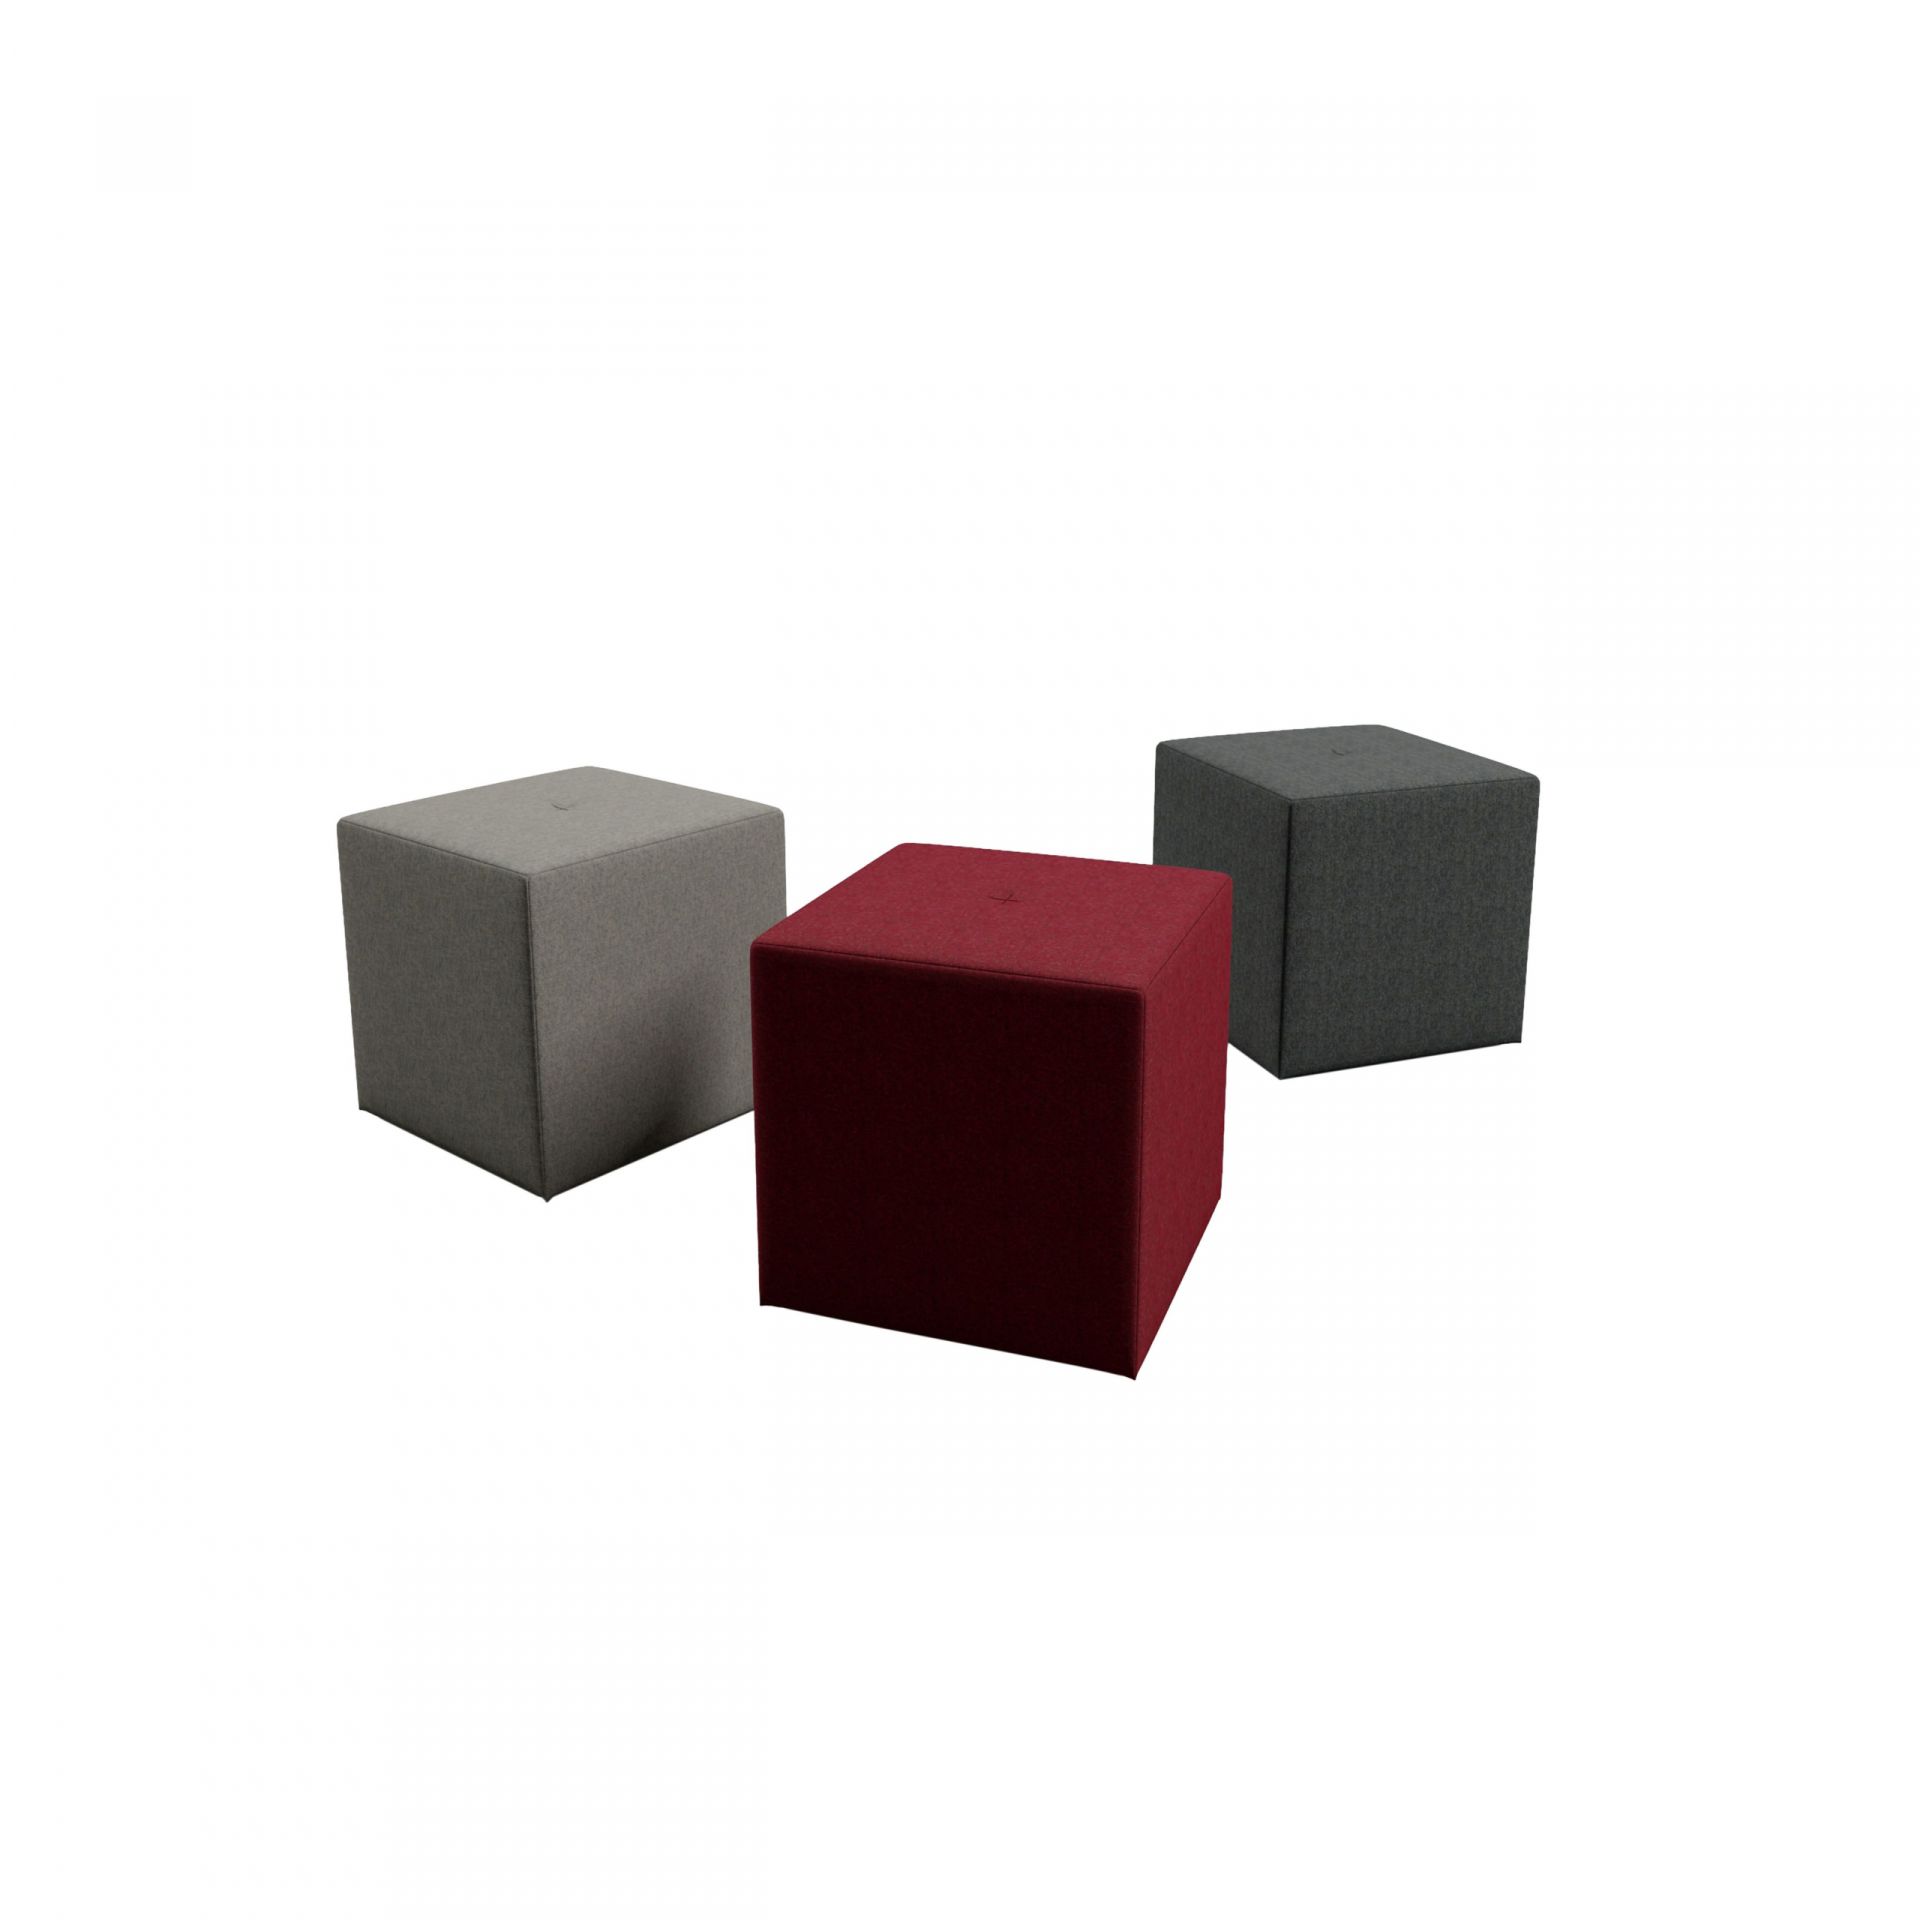 Create Seating Byggbara moduler: sittmöbler, förvaring och rum-i rum produktbild 4